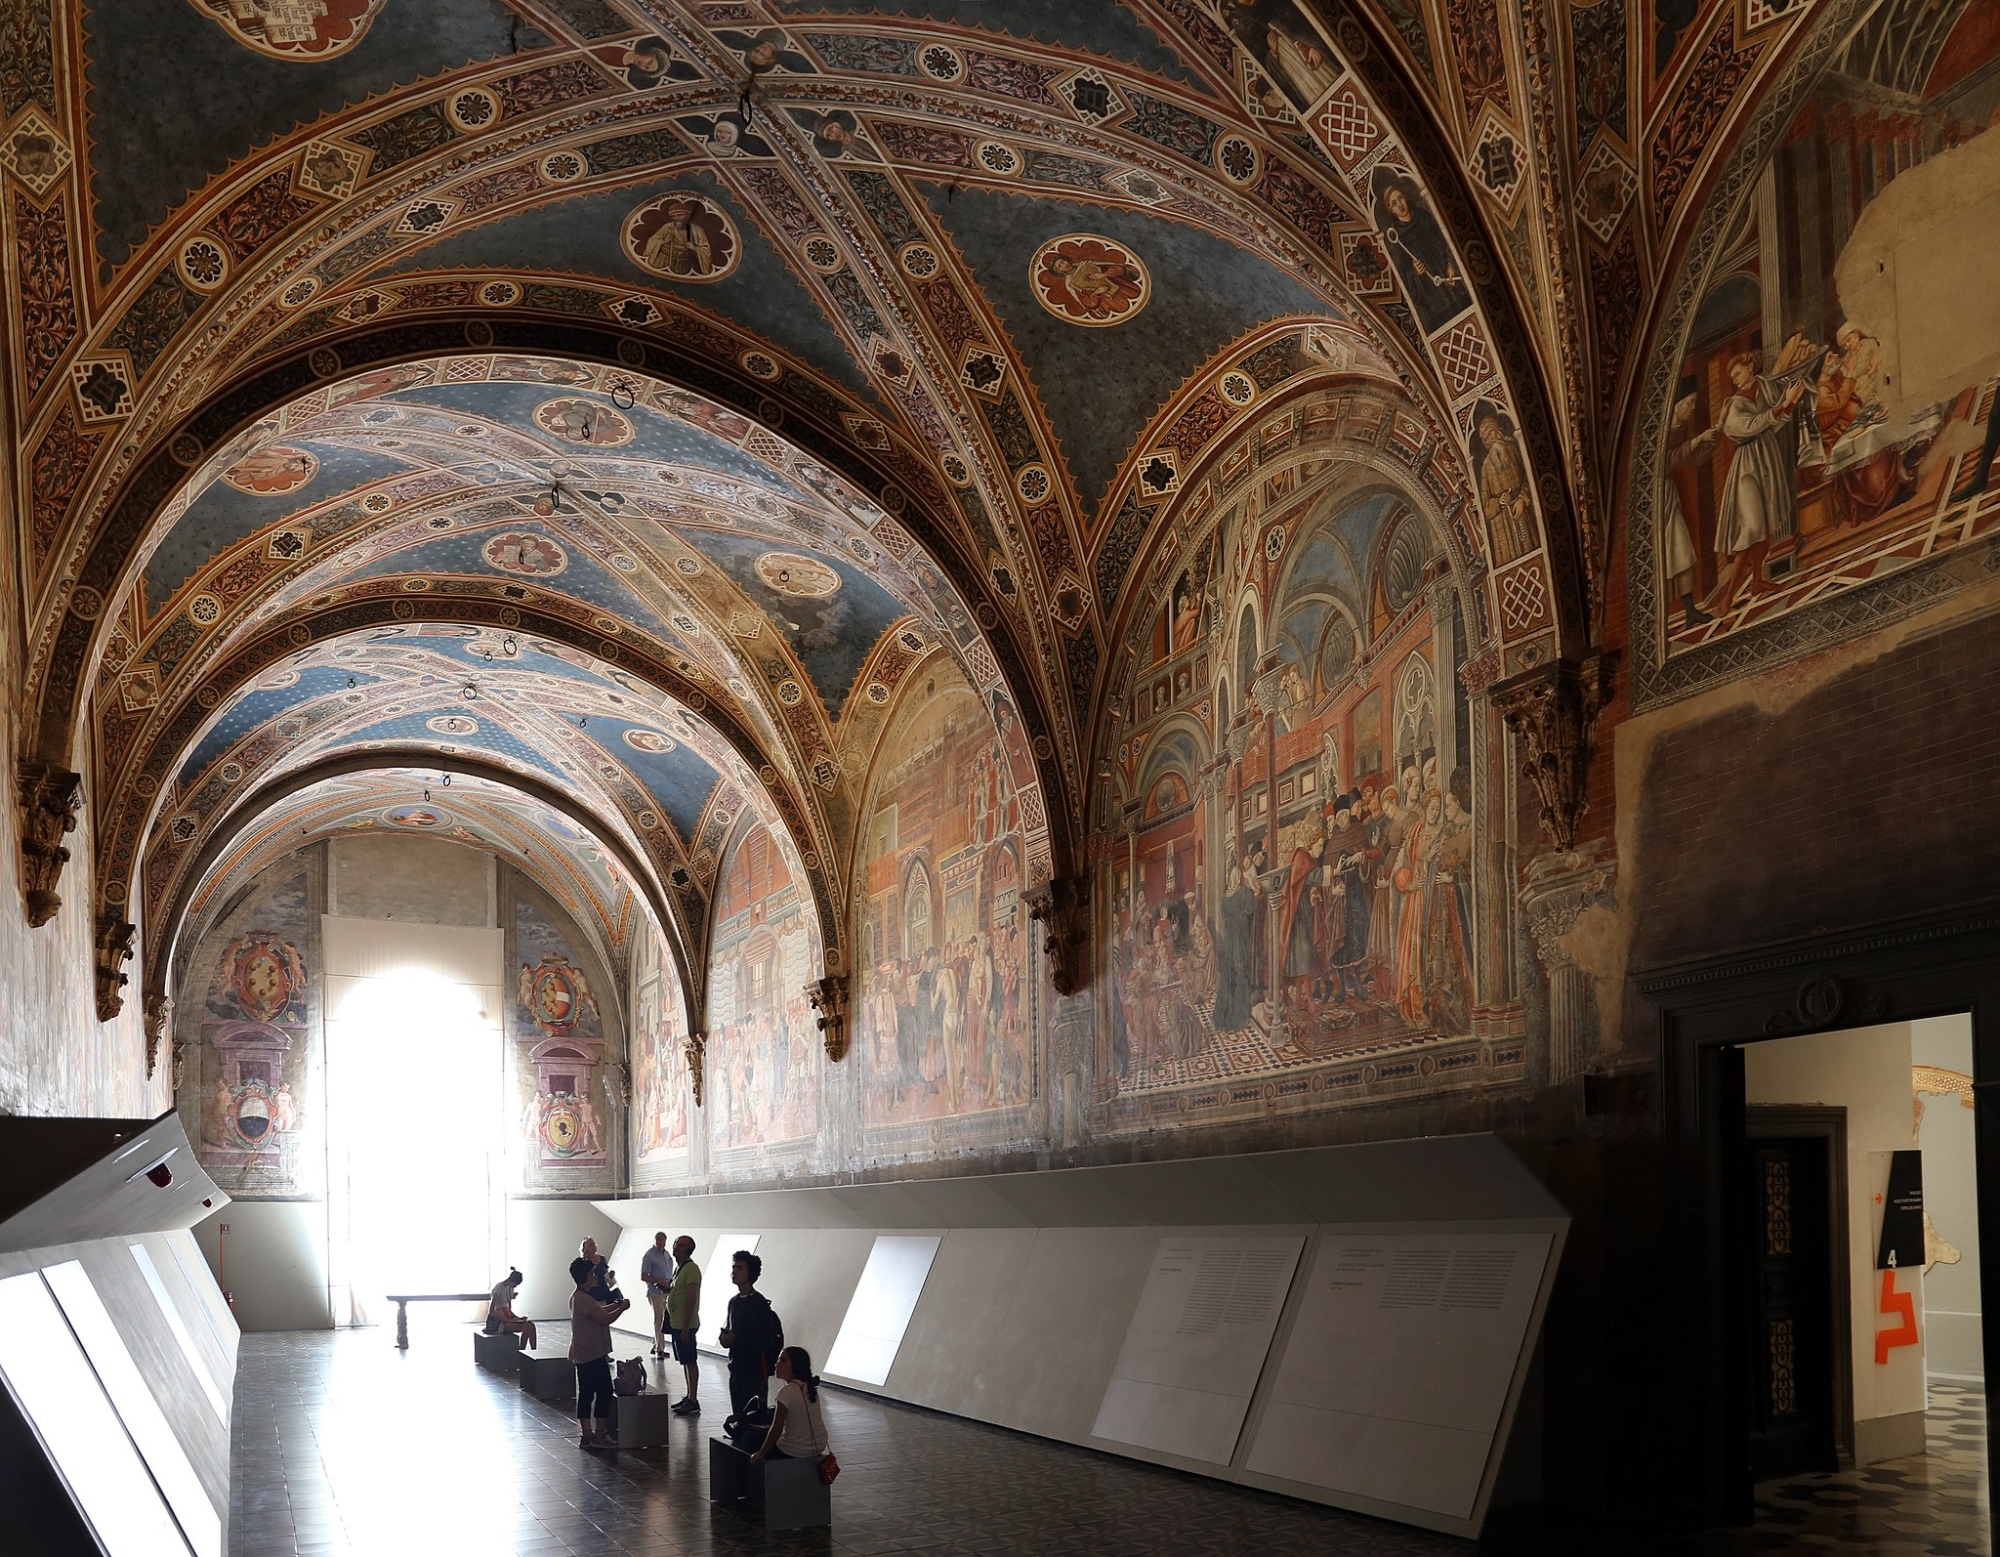 An historic room inside the Santa Maria della Scala